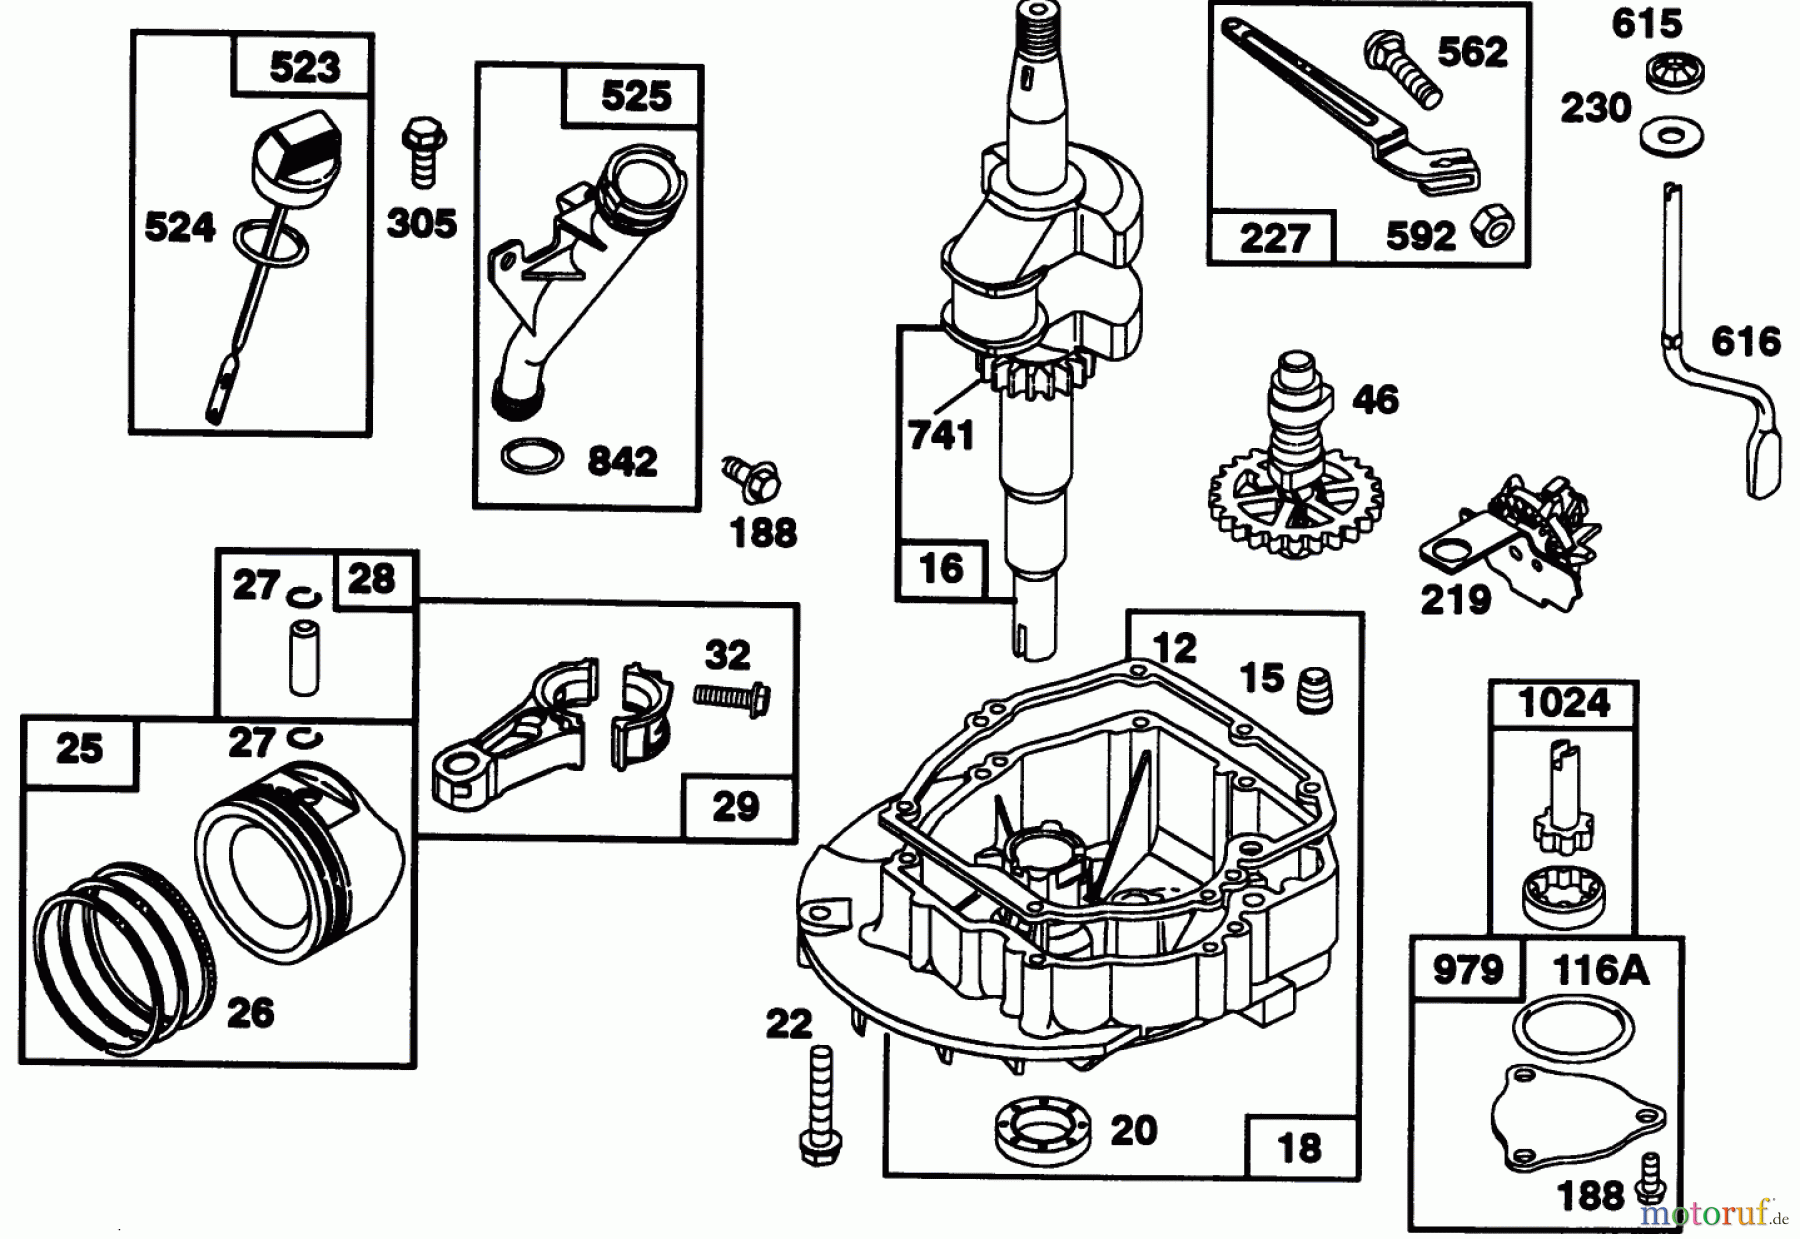  Toro Neu Mowers, Walk-Behind Seite 2 22151 - Toro Lawnmower, 1993 (3900001-3900855) ENGINE GTS 150 77-9140 #2